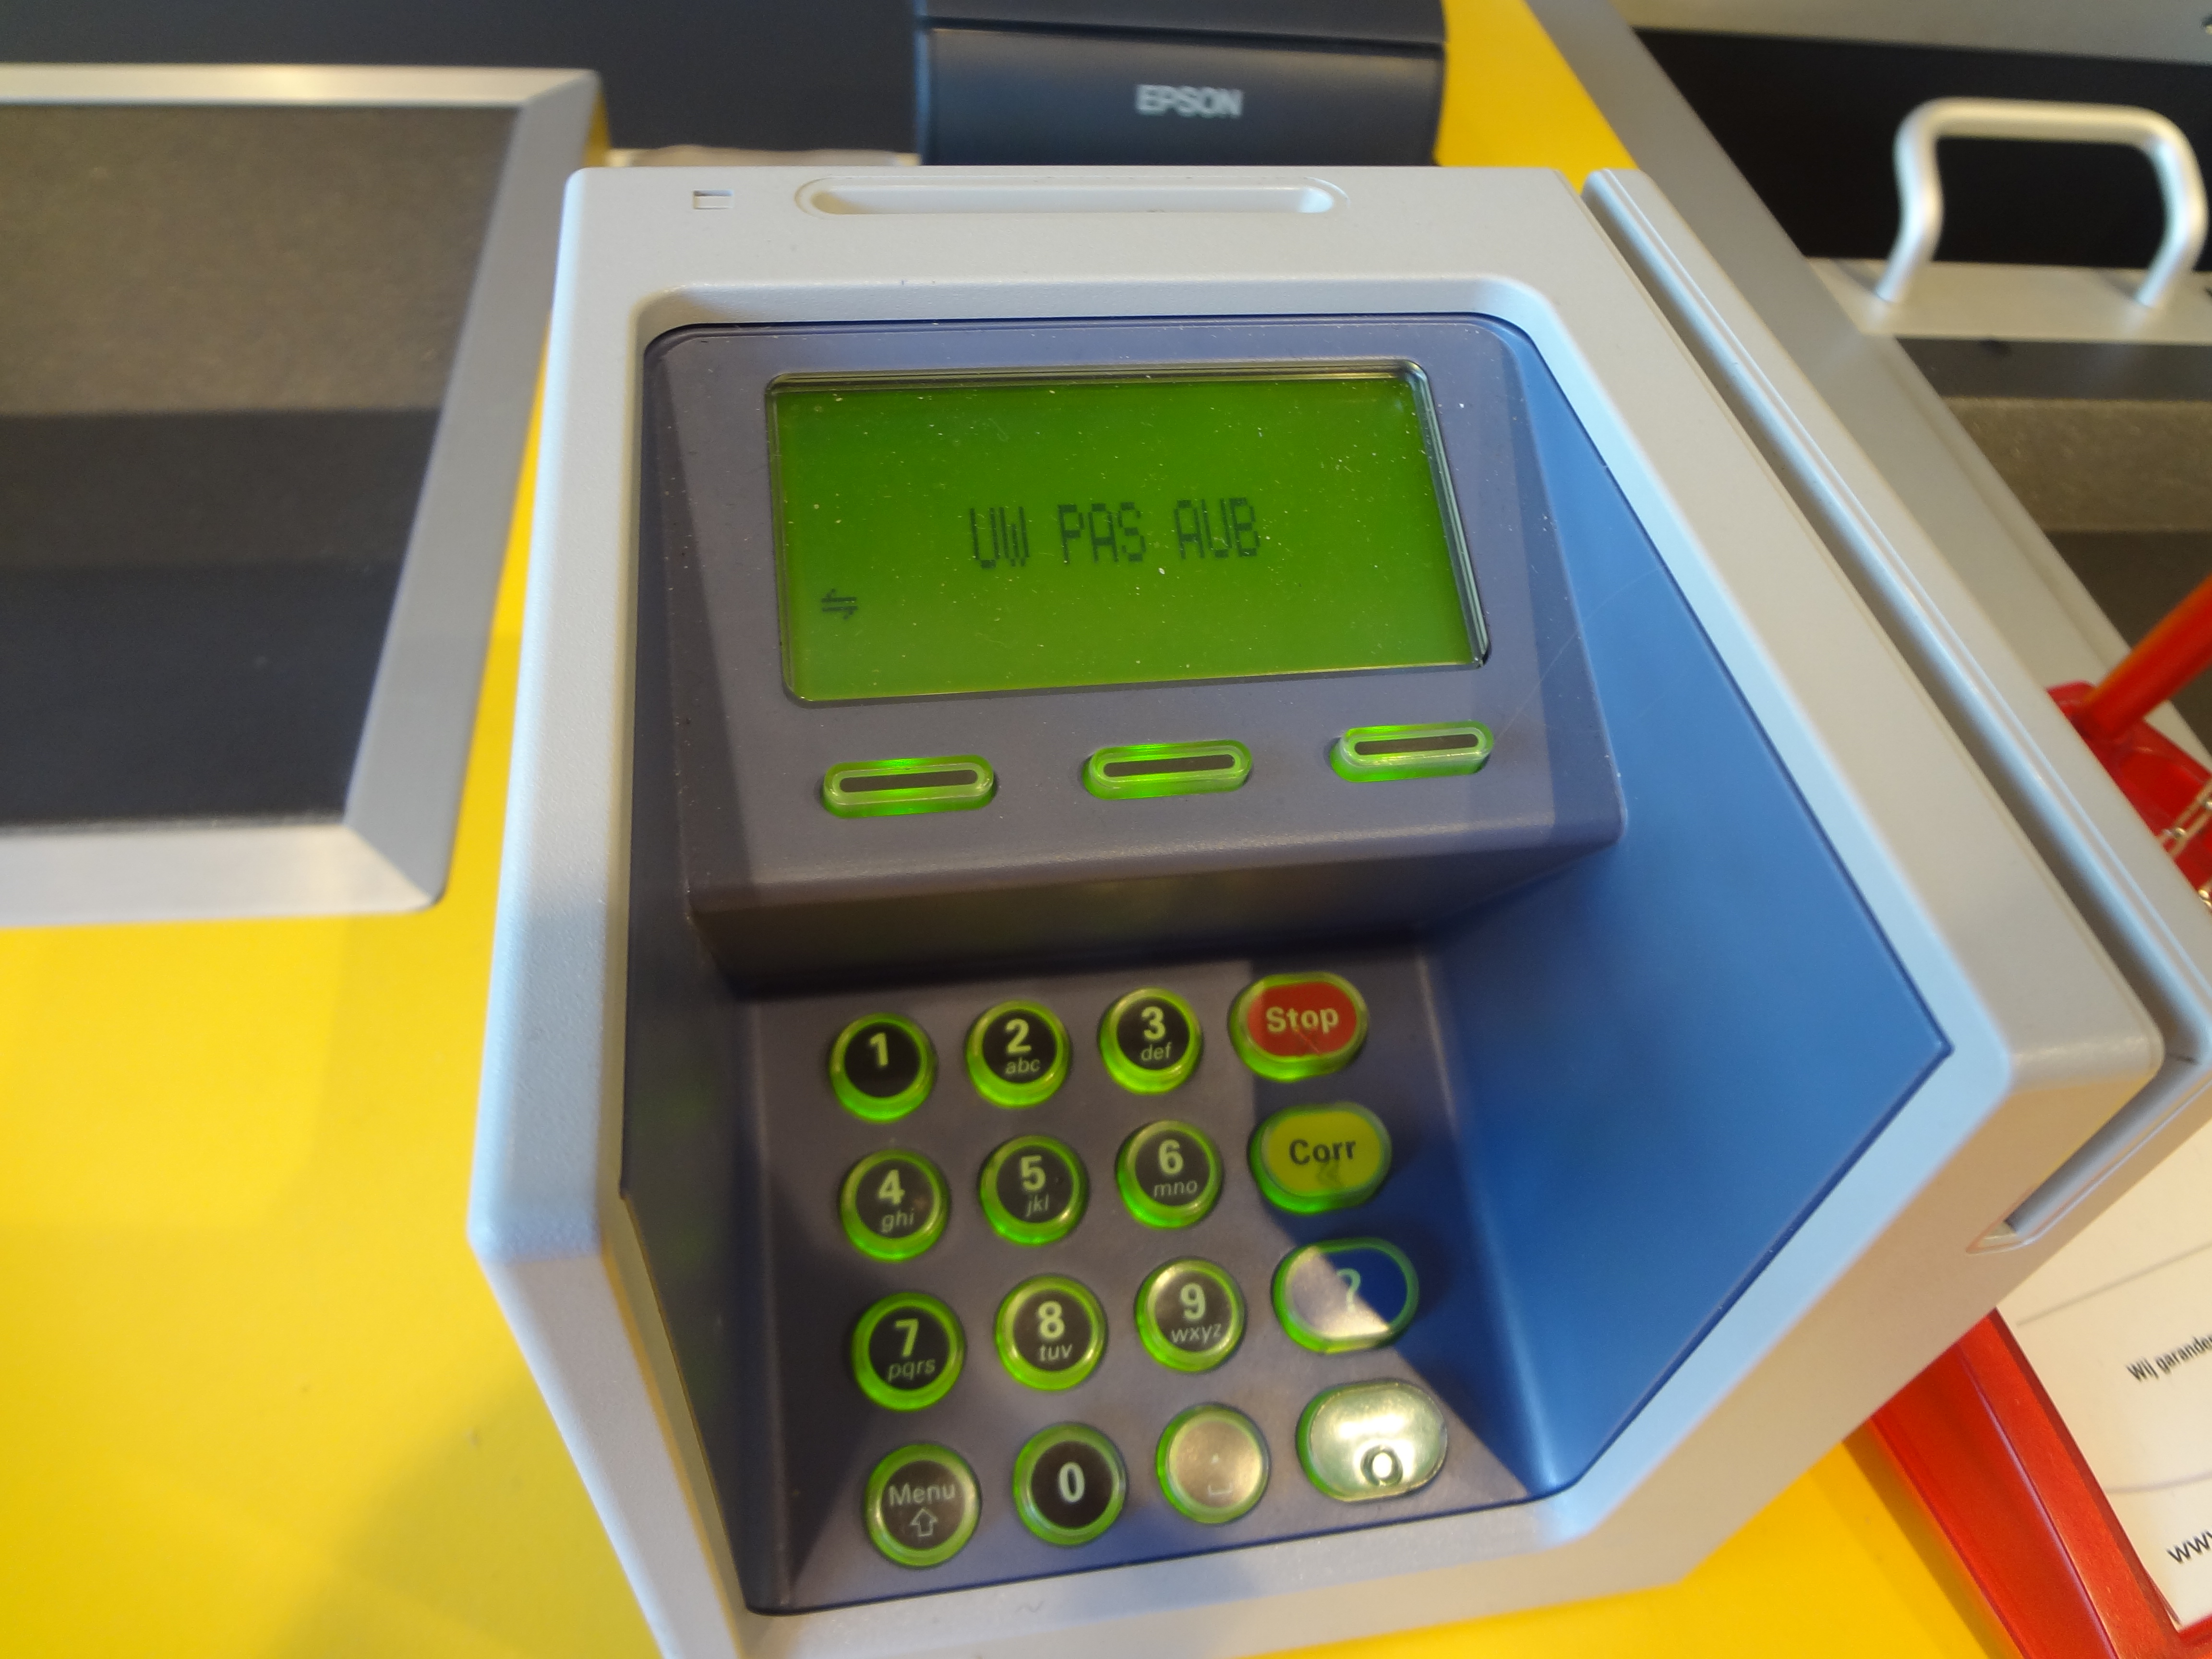 Vermeend tegel Nietje Driekwart transacties bij tankstations betaald met pinpas | TankPro.nl